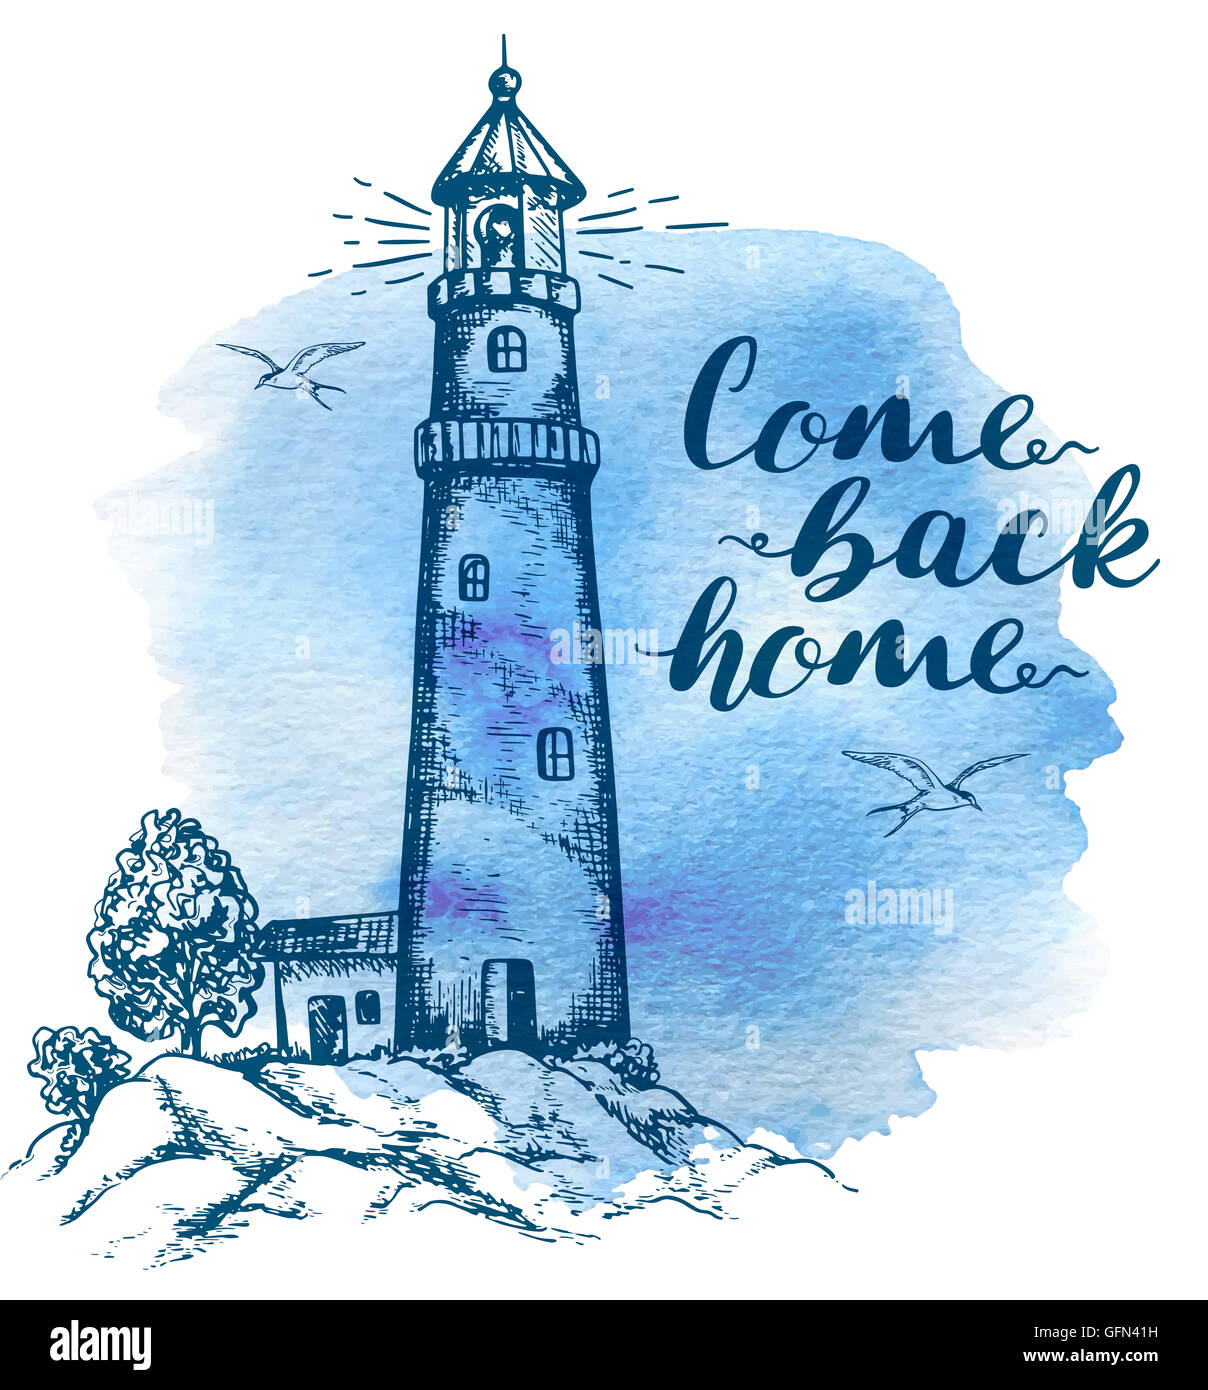 Arrière-plan dessiné à la main avec phare dans le style vintage. "Come back home" lettrage sur une aquarelle bleu arrière-plan. Banque D'Images